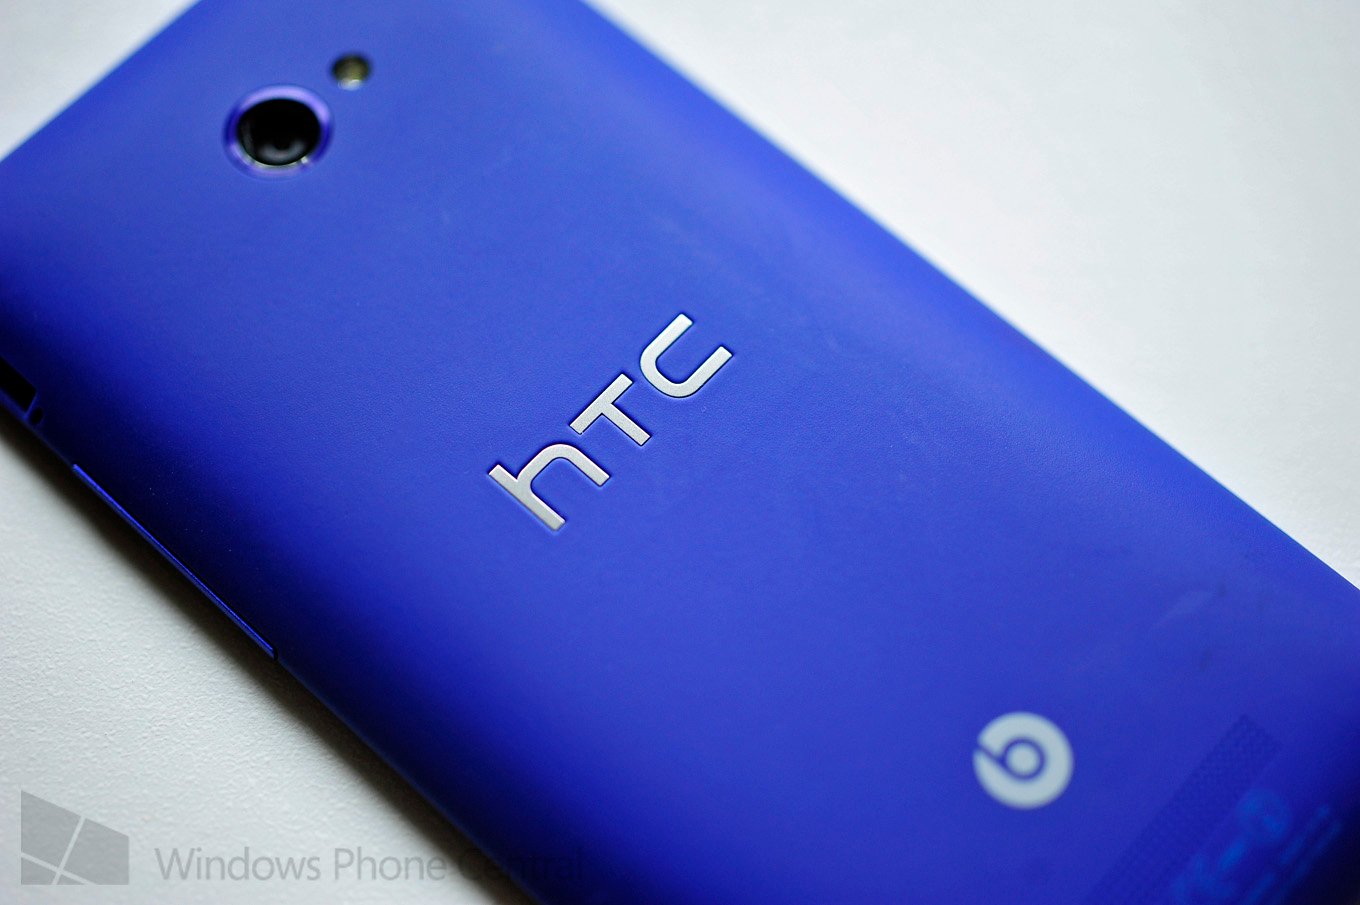 HTC Windows Phone